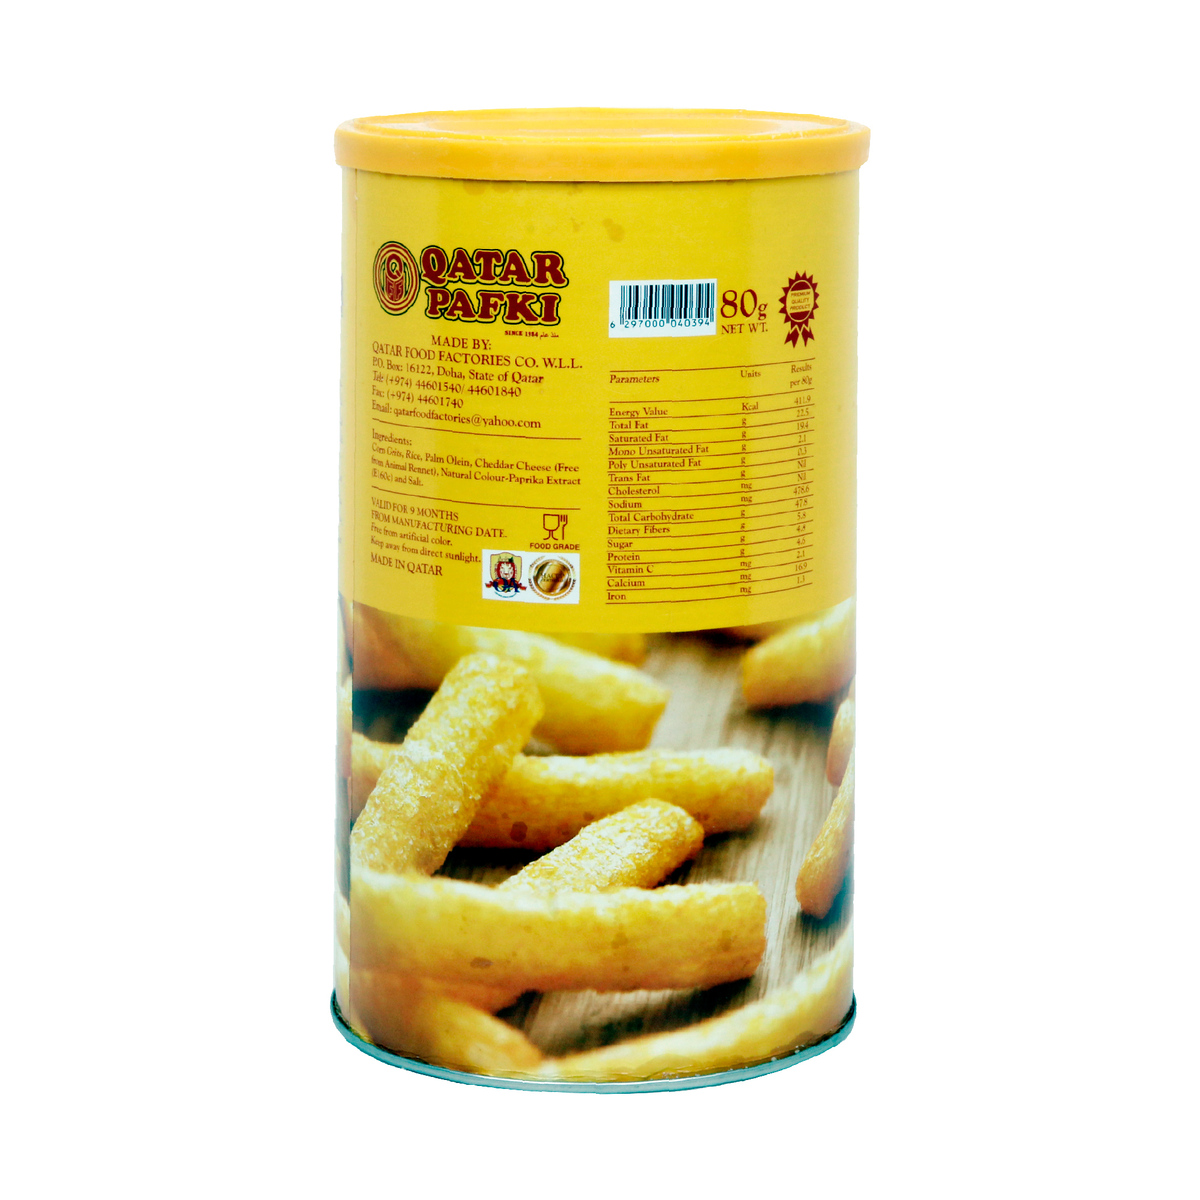 Qatar Pafki Cheese Sticks 80g